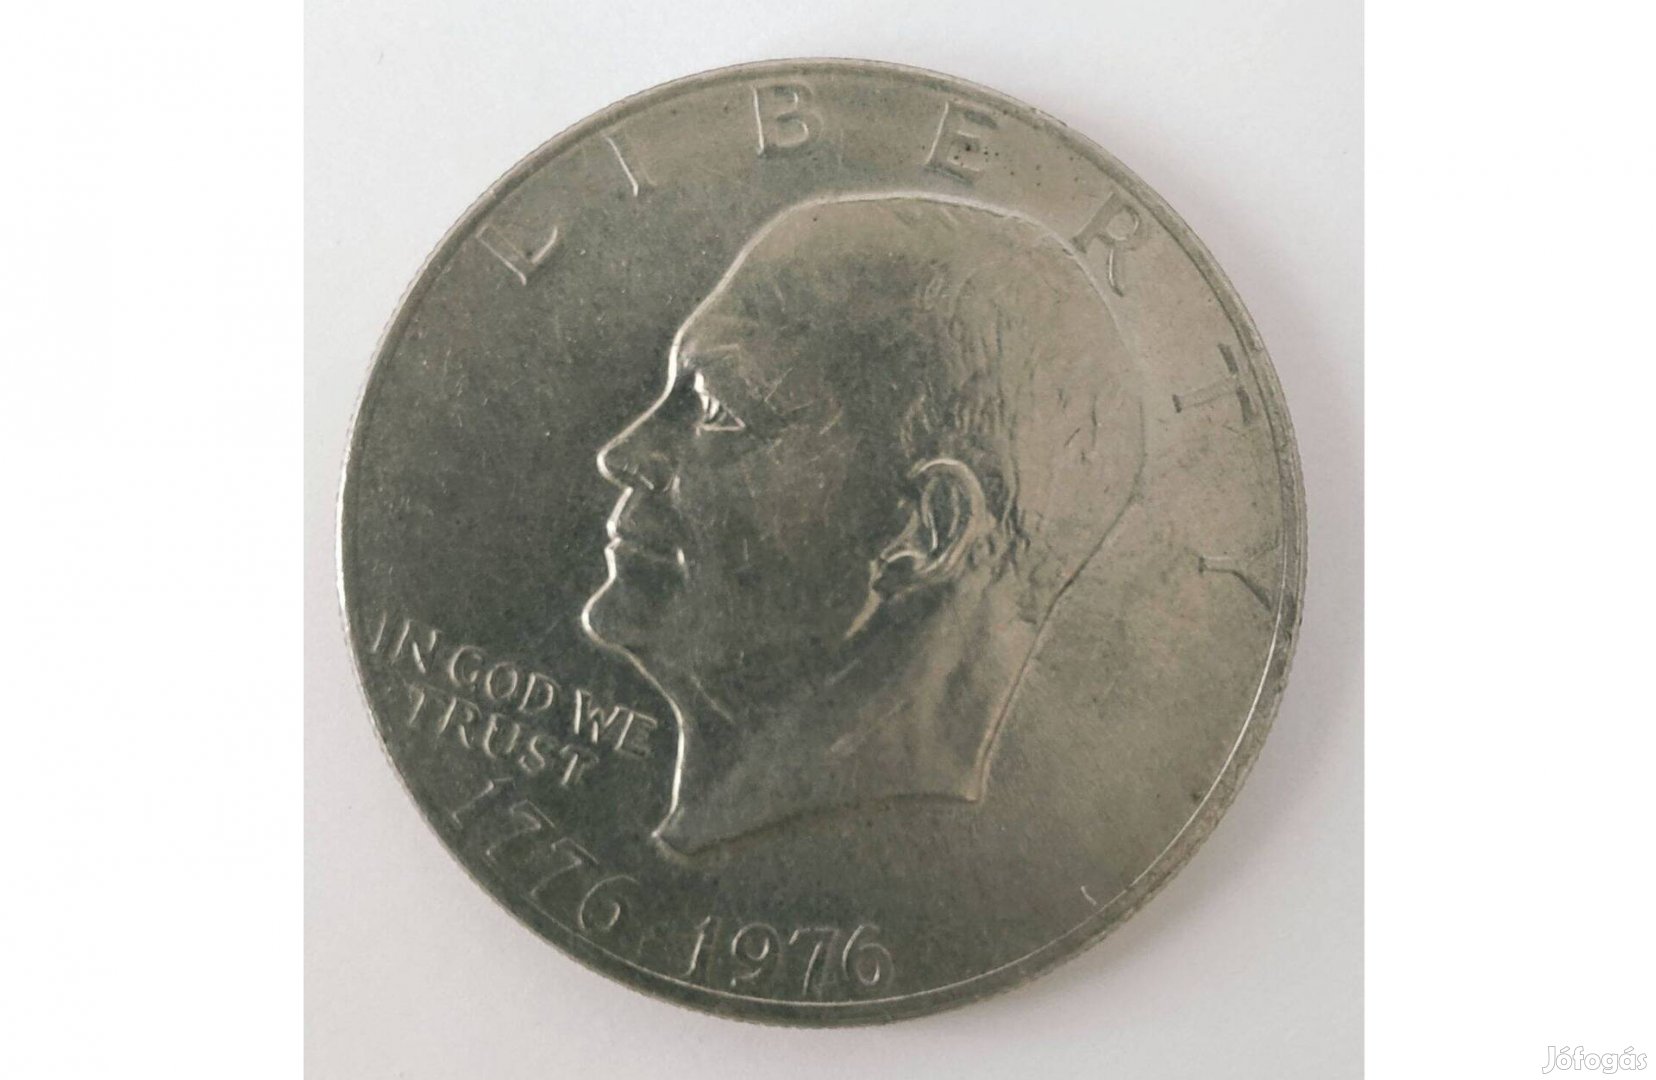 '1976 Eisenhower One Dollar' - bicentenáriumi emlékérme